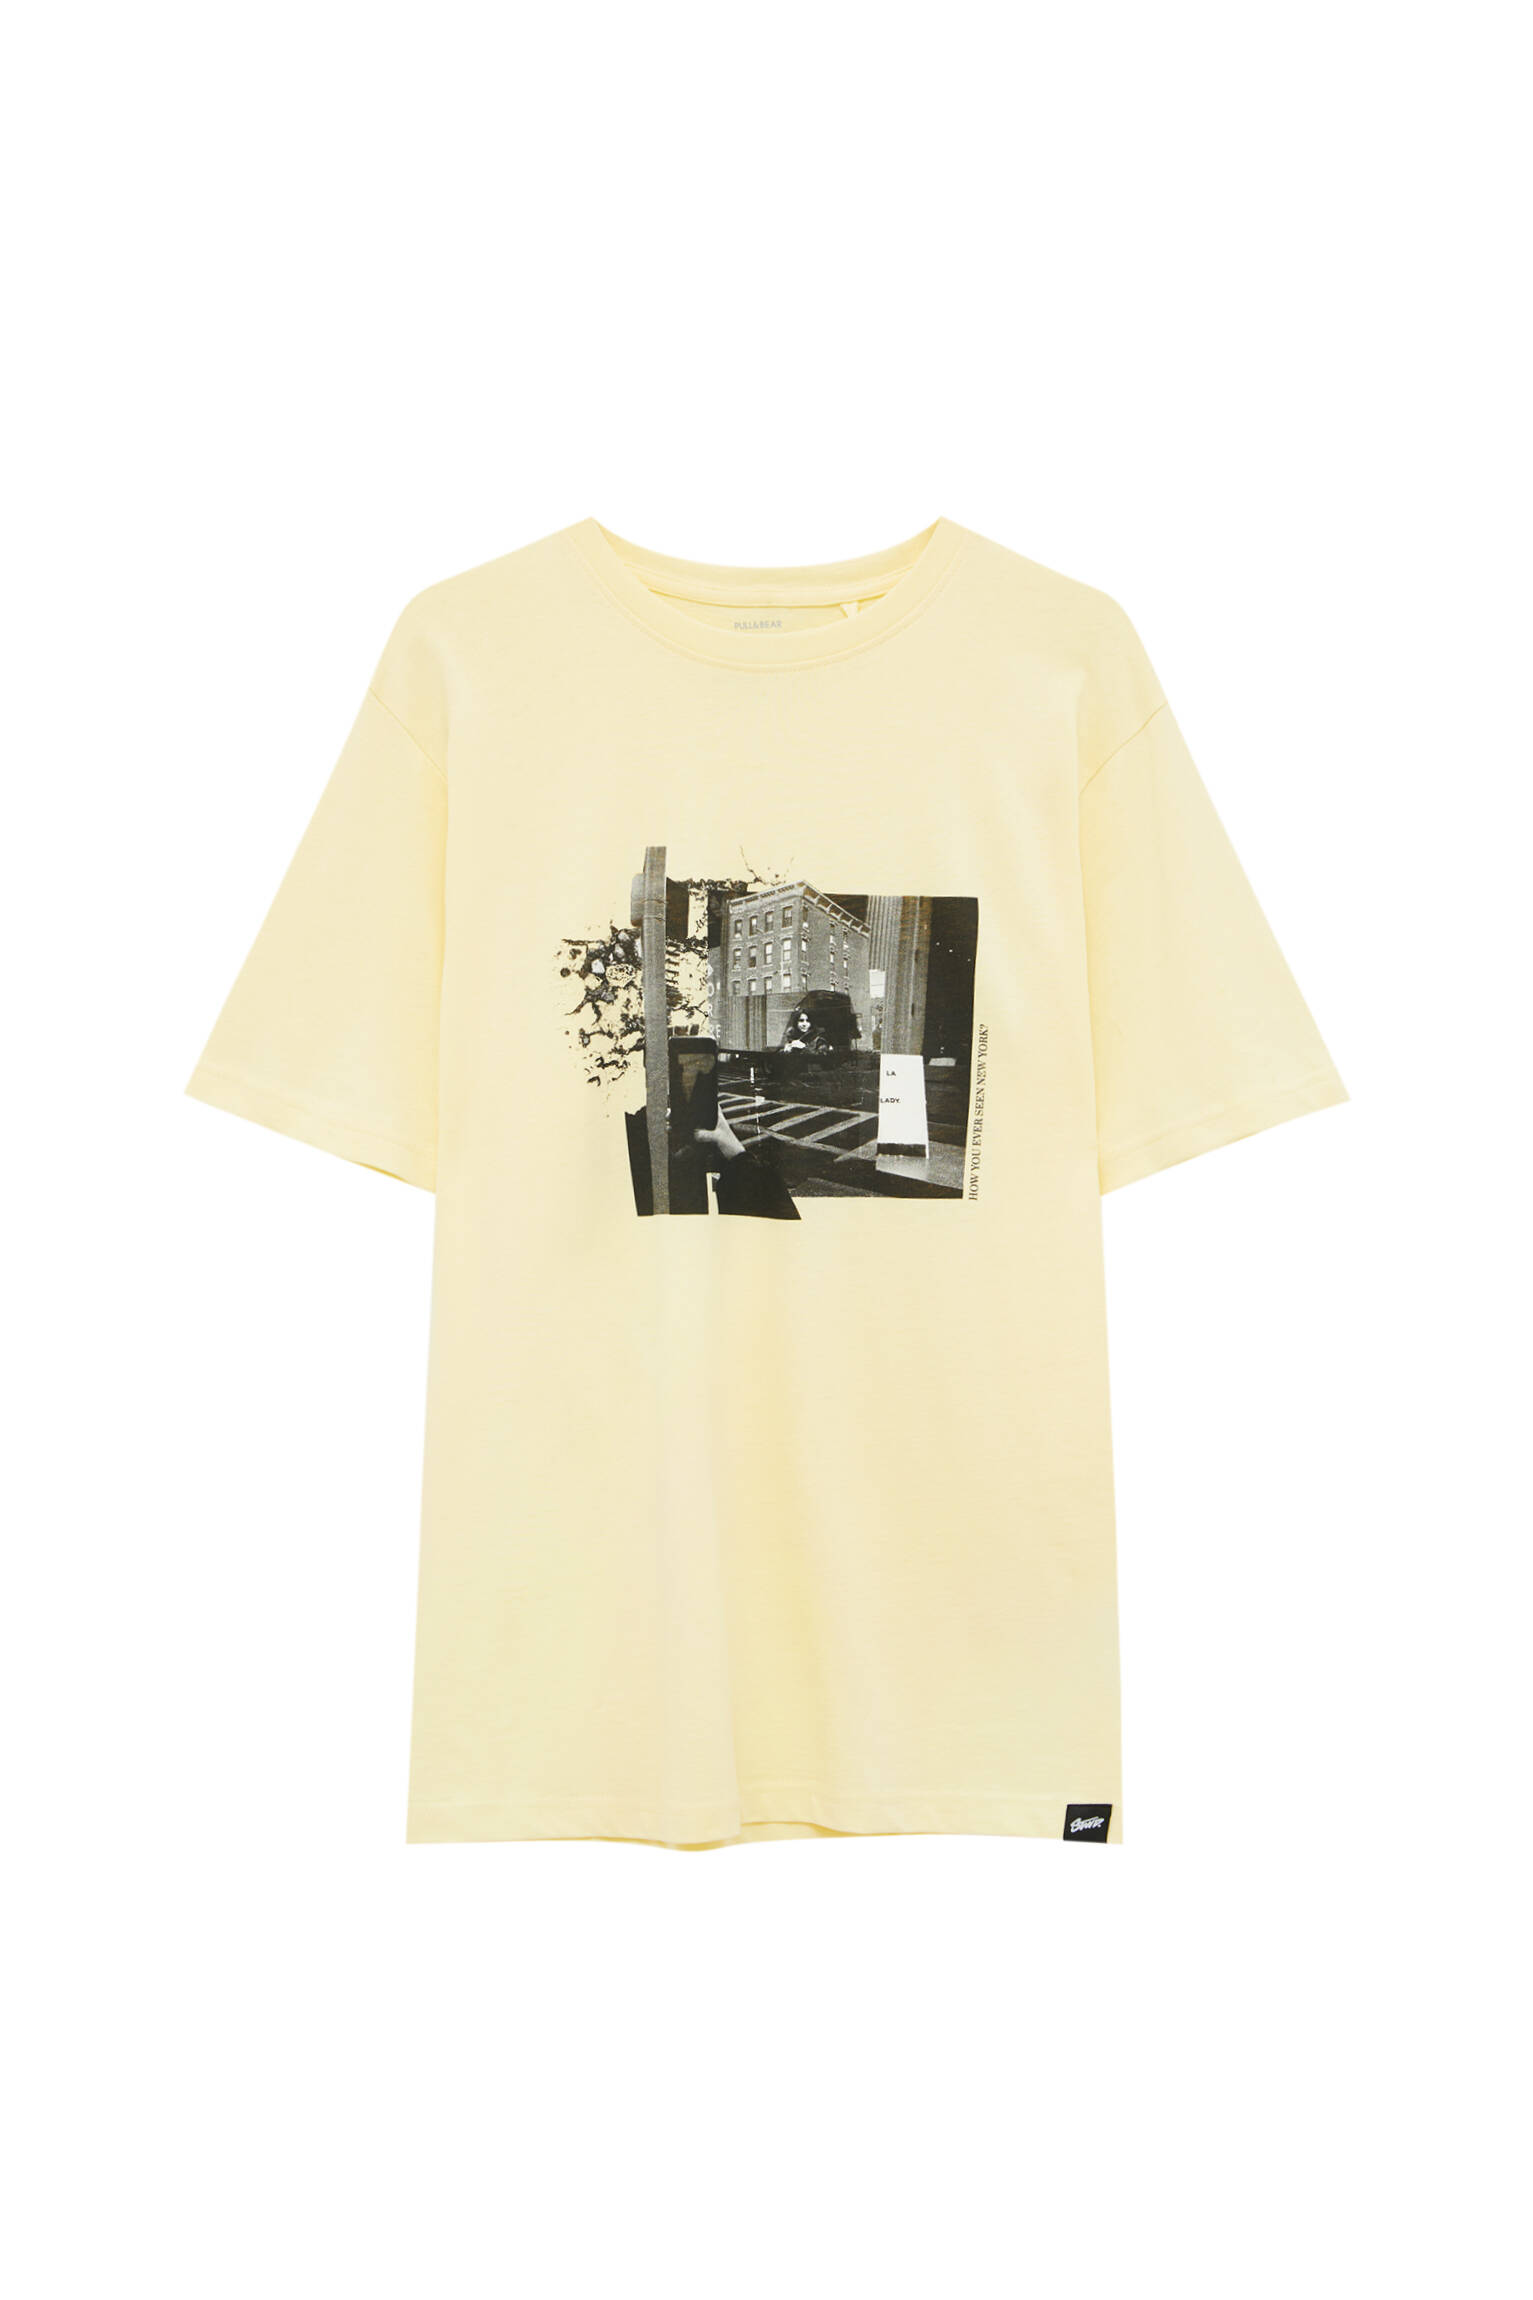 Pull&bear Homme T-shirt Jaune Pastel En Coton à Manches Courtes, Col Rond Et Imprimé Photo Contrasta